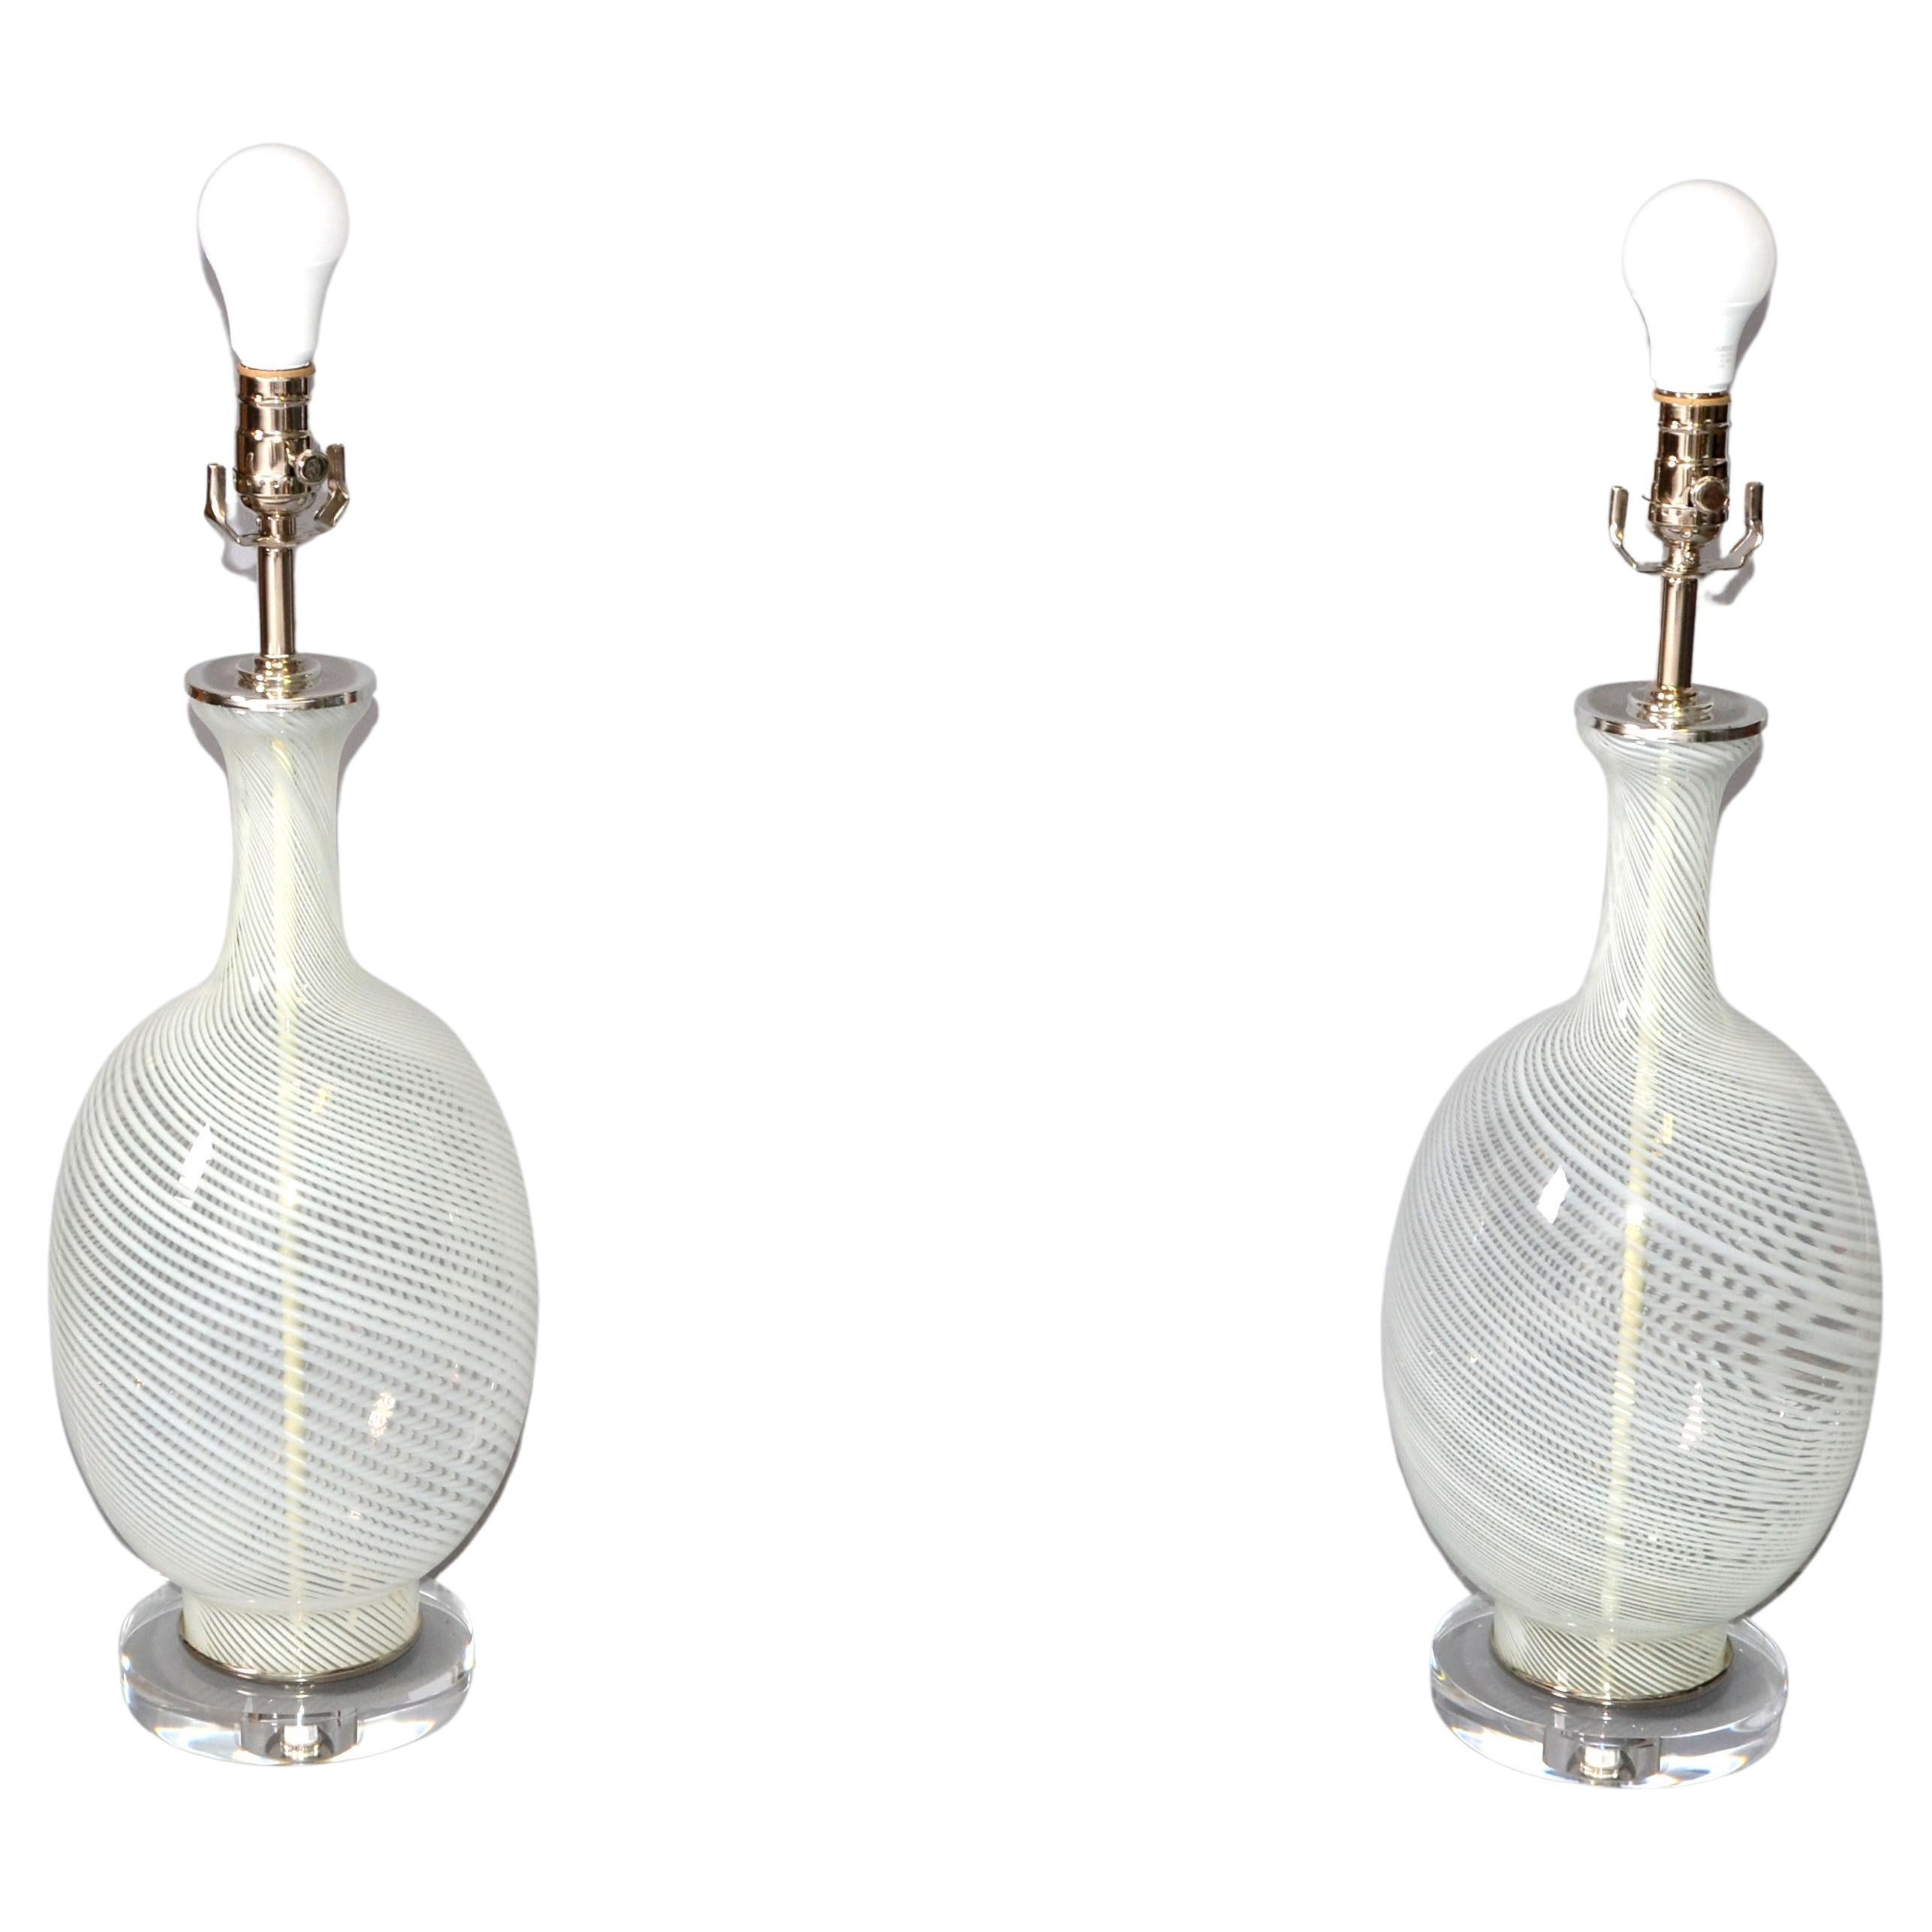 Ein Paar mundgeblasene Kunstglas-Tischlampen von Blenko aus der Jahrhundertmitte.
Der gewirbelte, transparente Glaskörper ist auf einem Acrylsockel montiert und hat einen vernickelten Deckel mit Hals.
In perfektem Zustand und verwendet eine